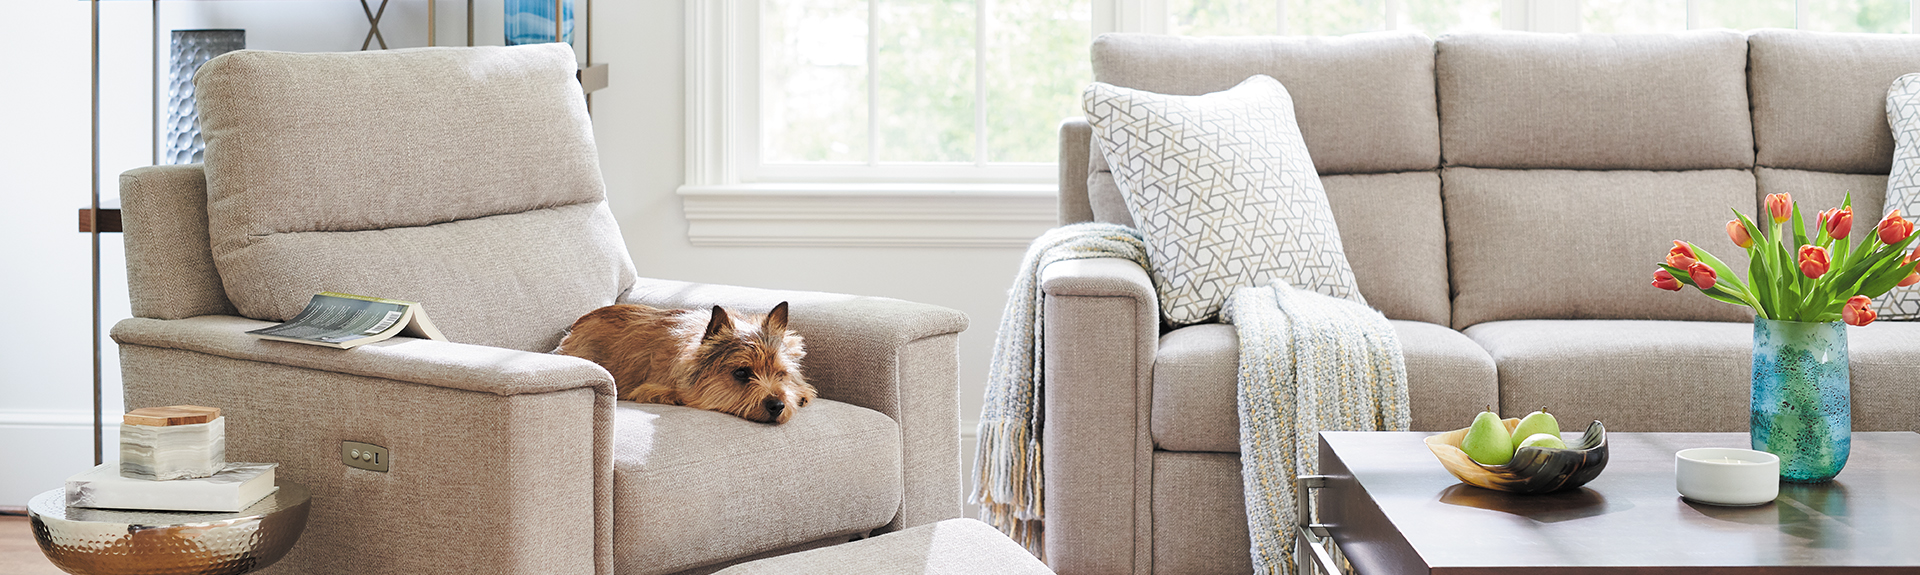 Furniture-Buying-Guide-Dog